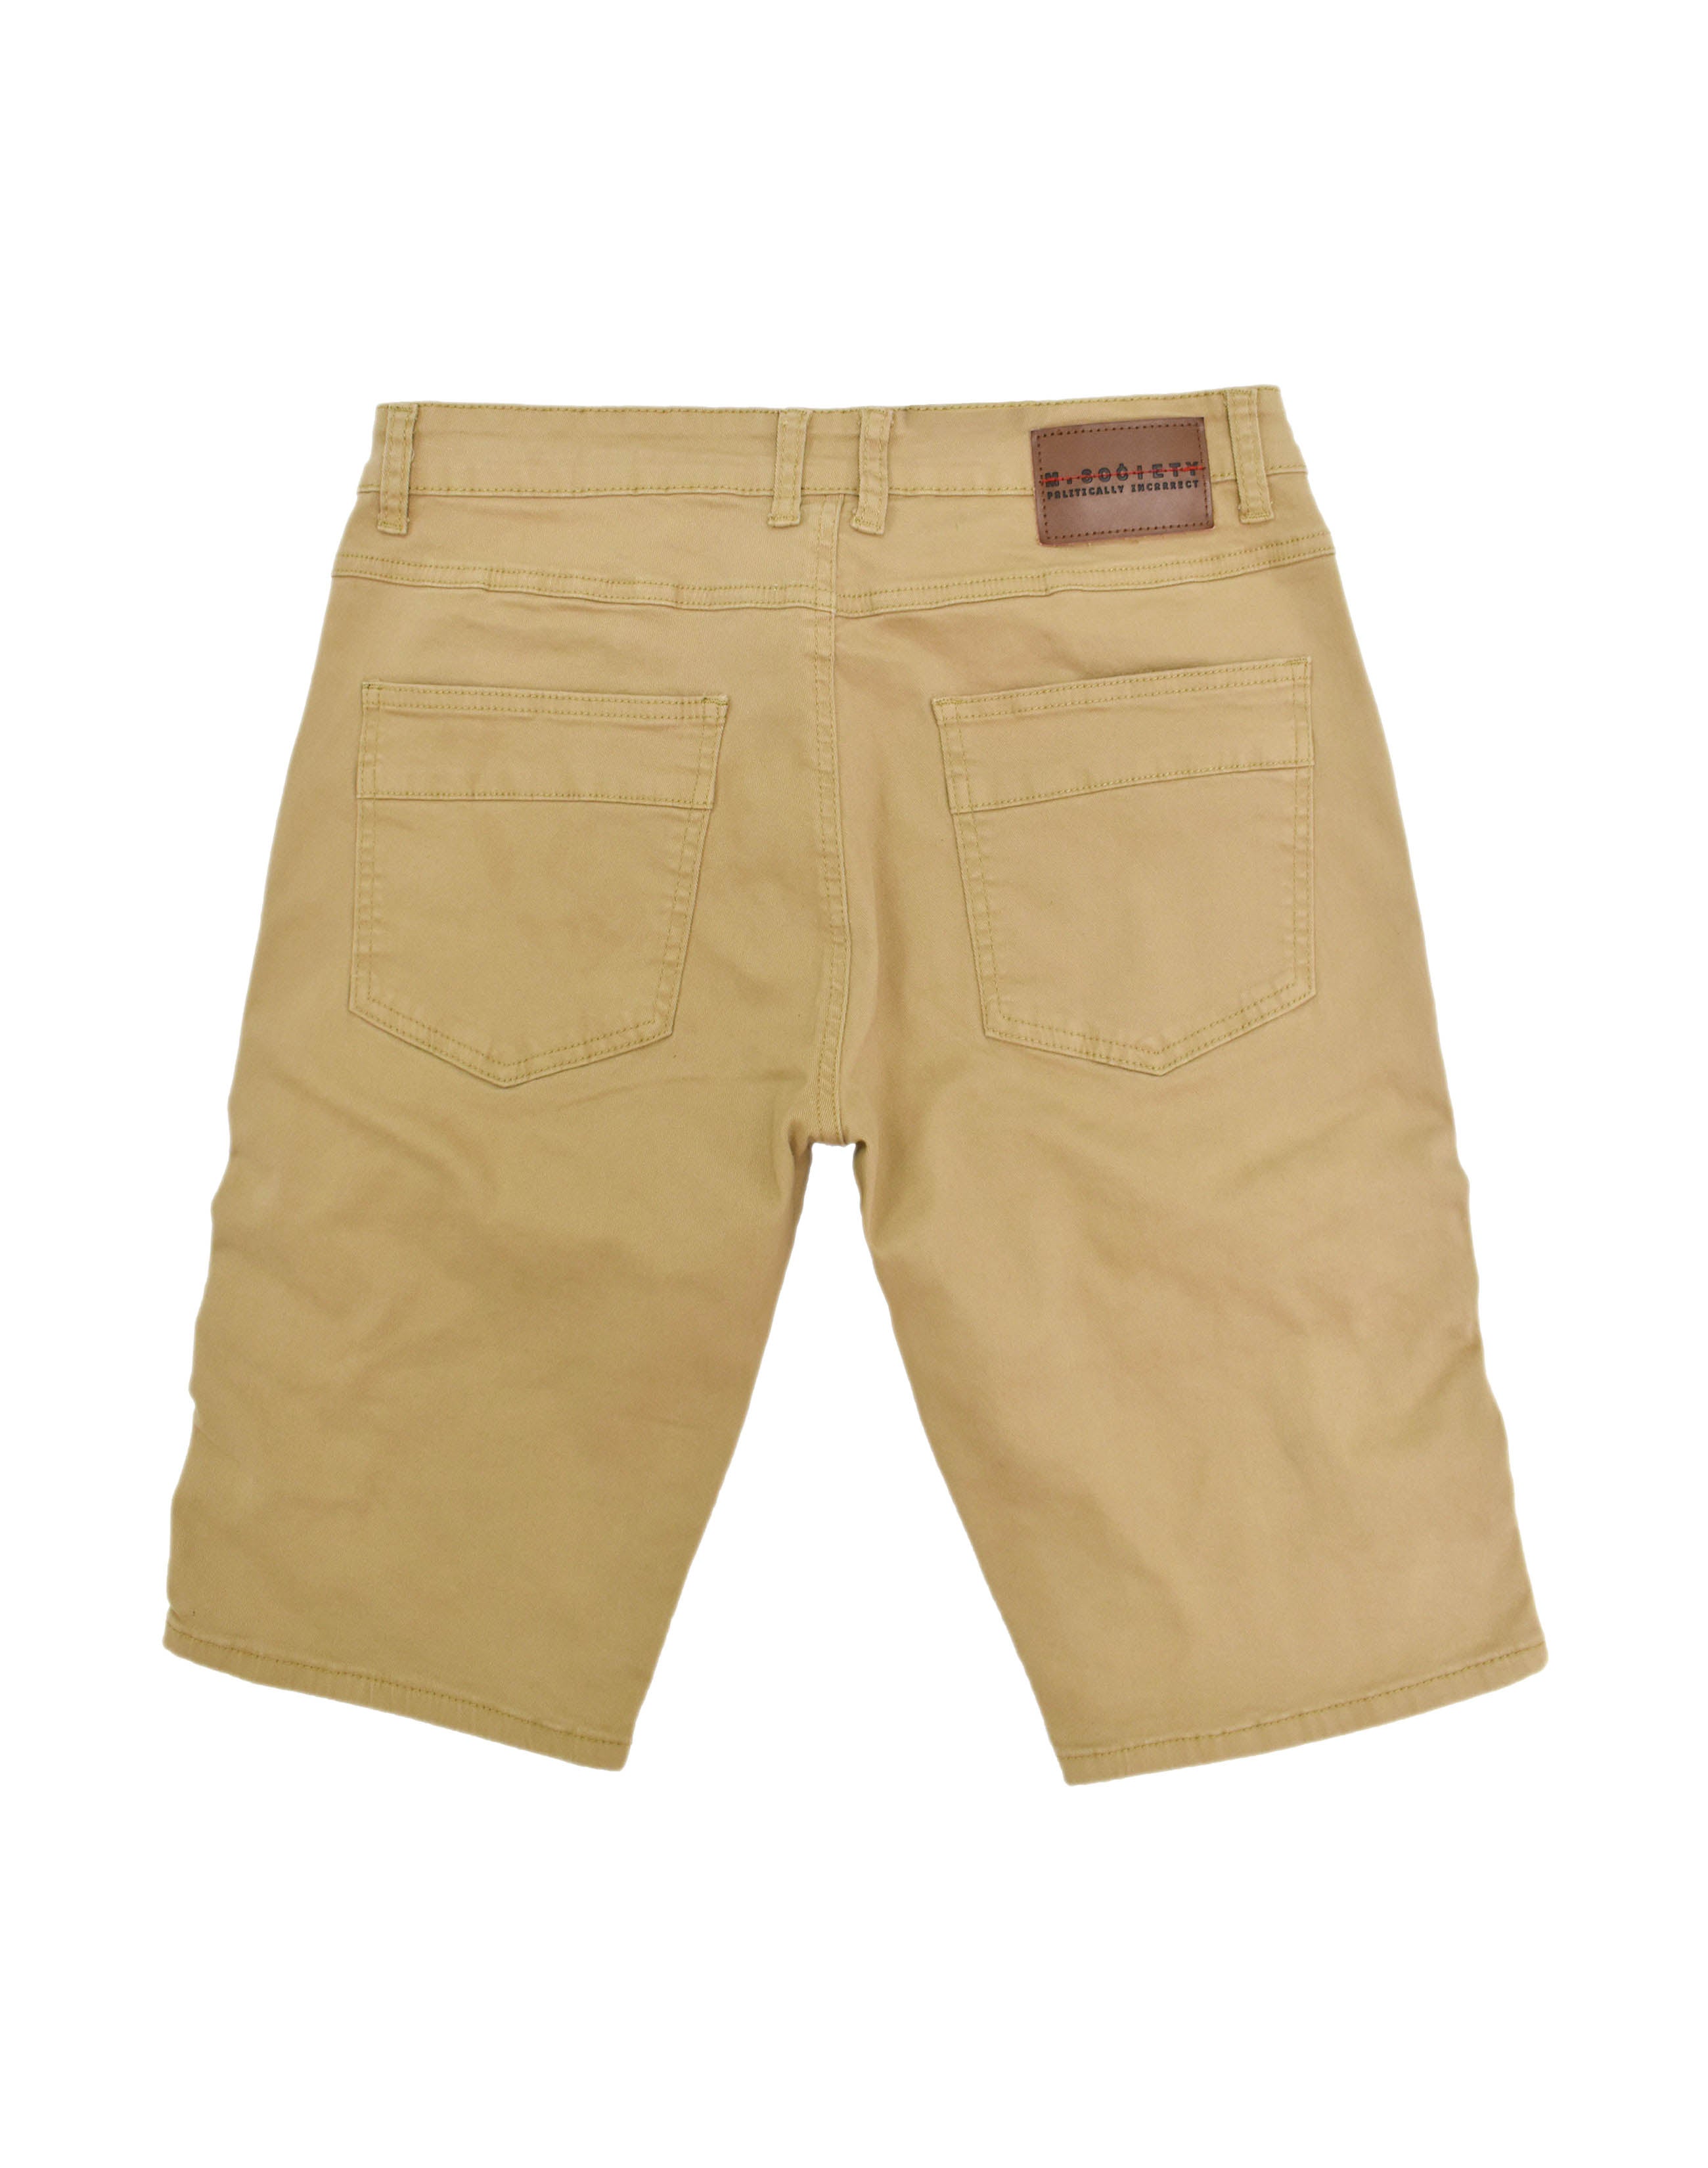 MS20570 Khaki Panel Denim Shorts